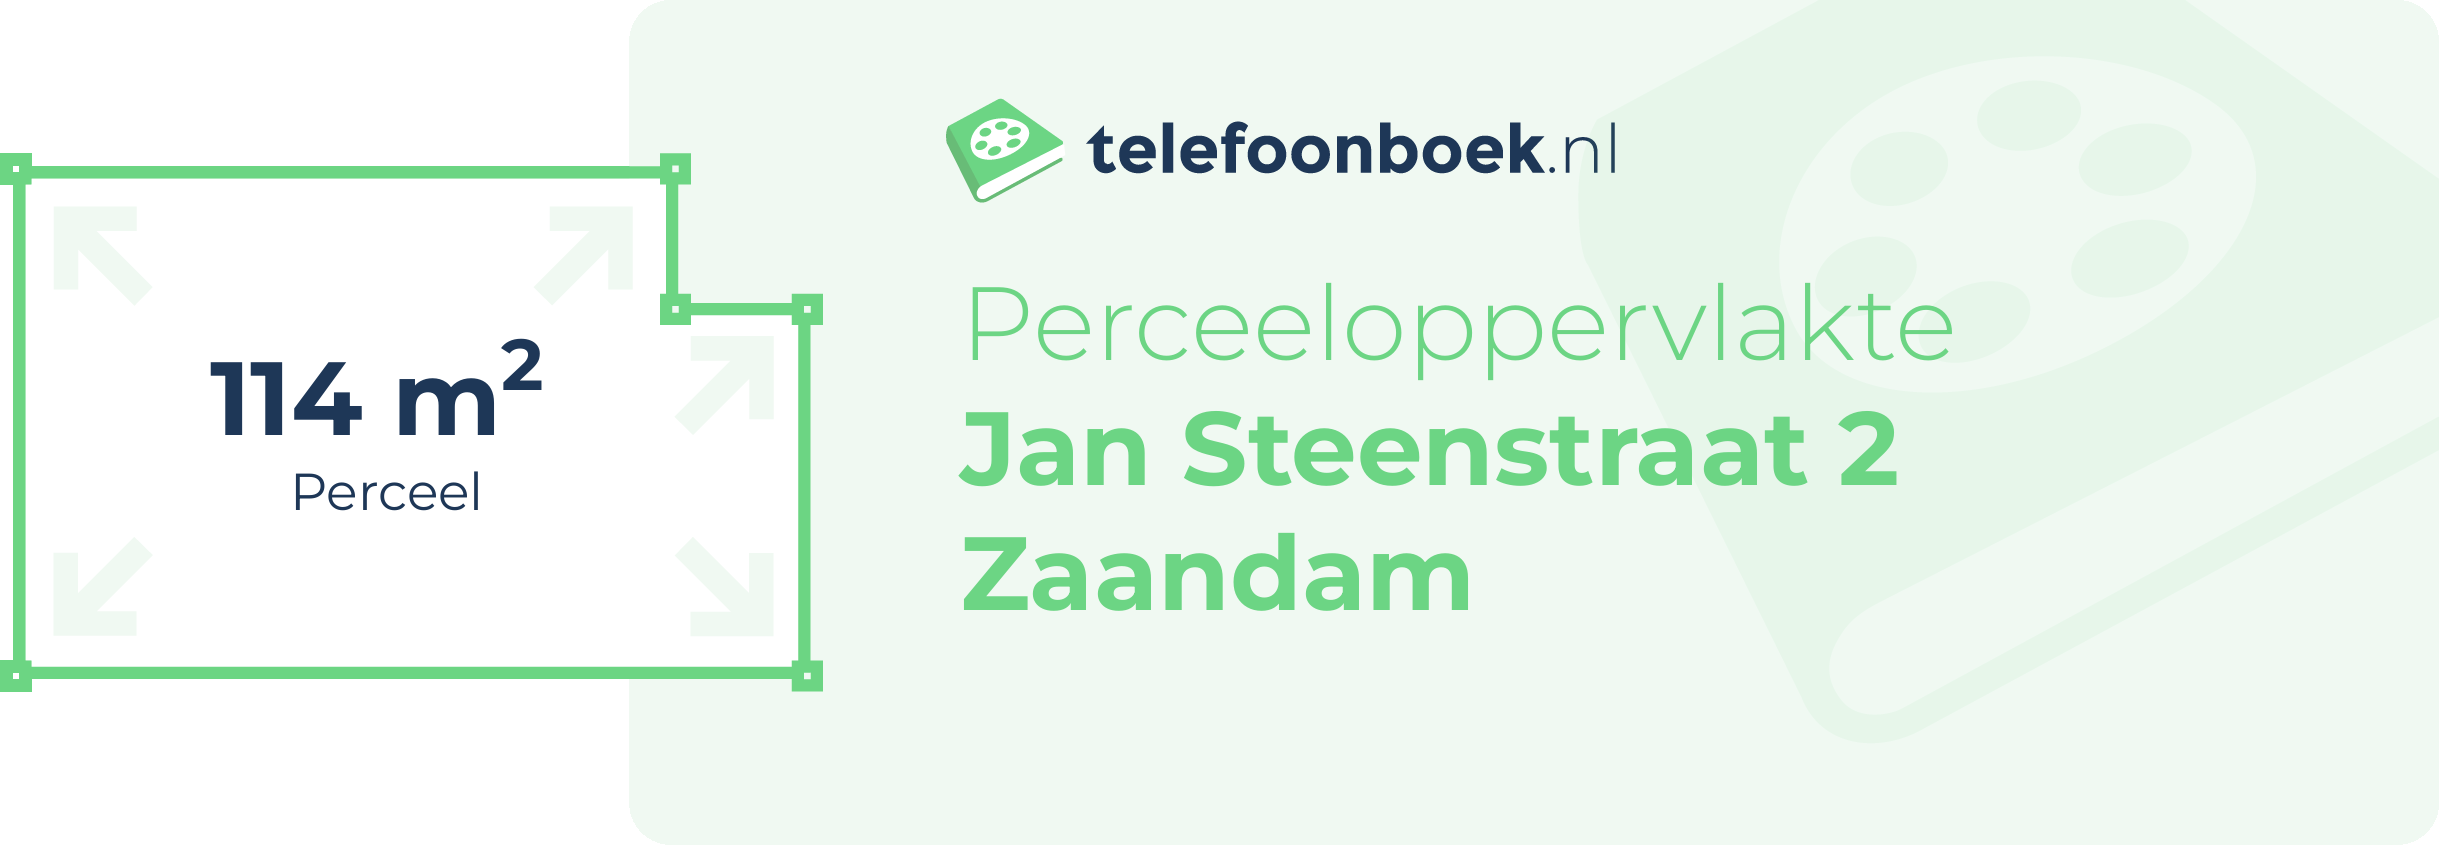 Perceeloppervlakte Jan Steenstraat 2 Zaandam